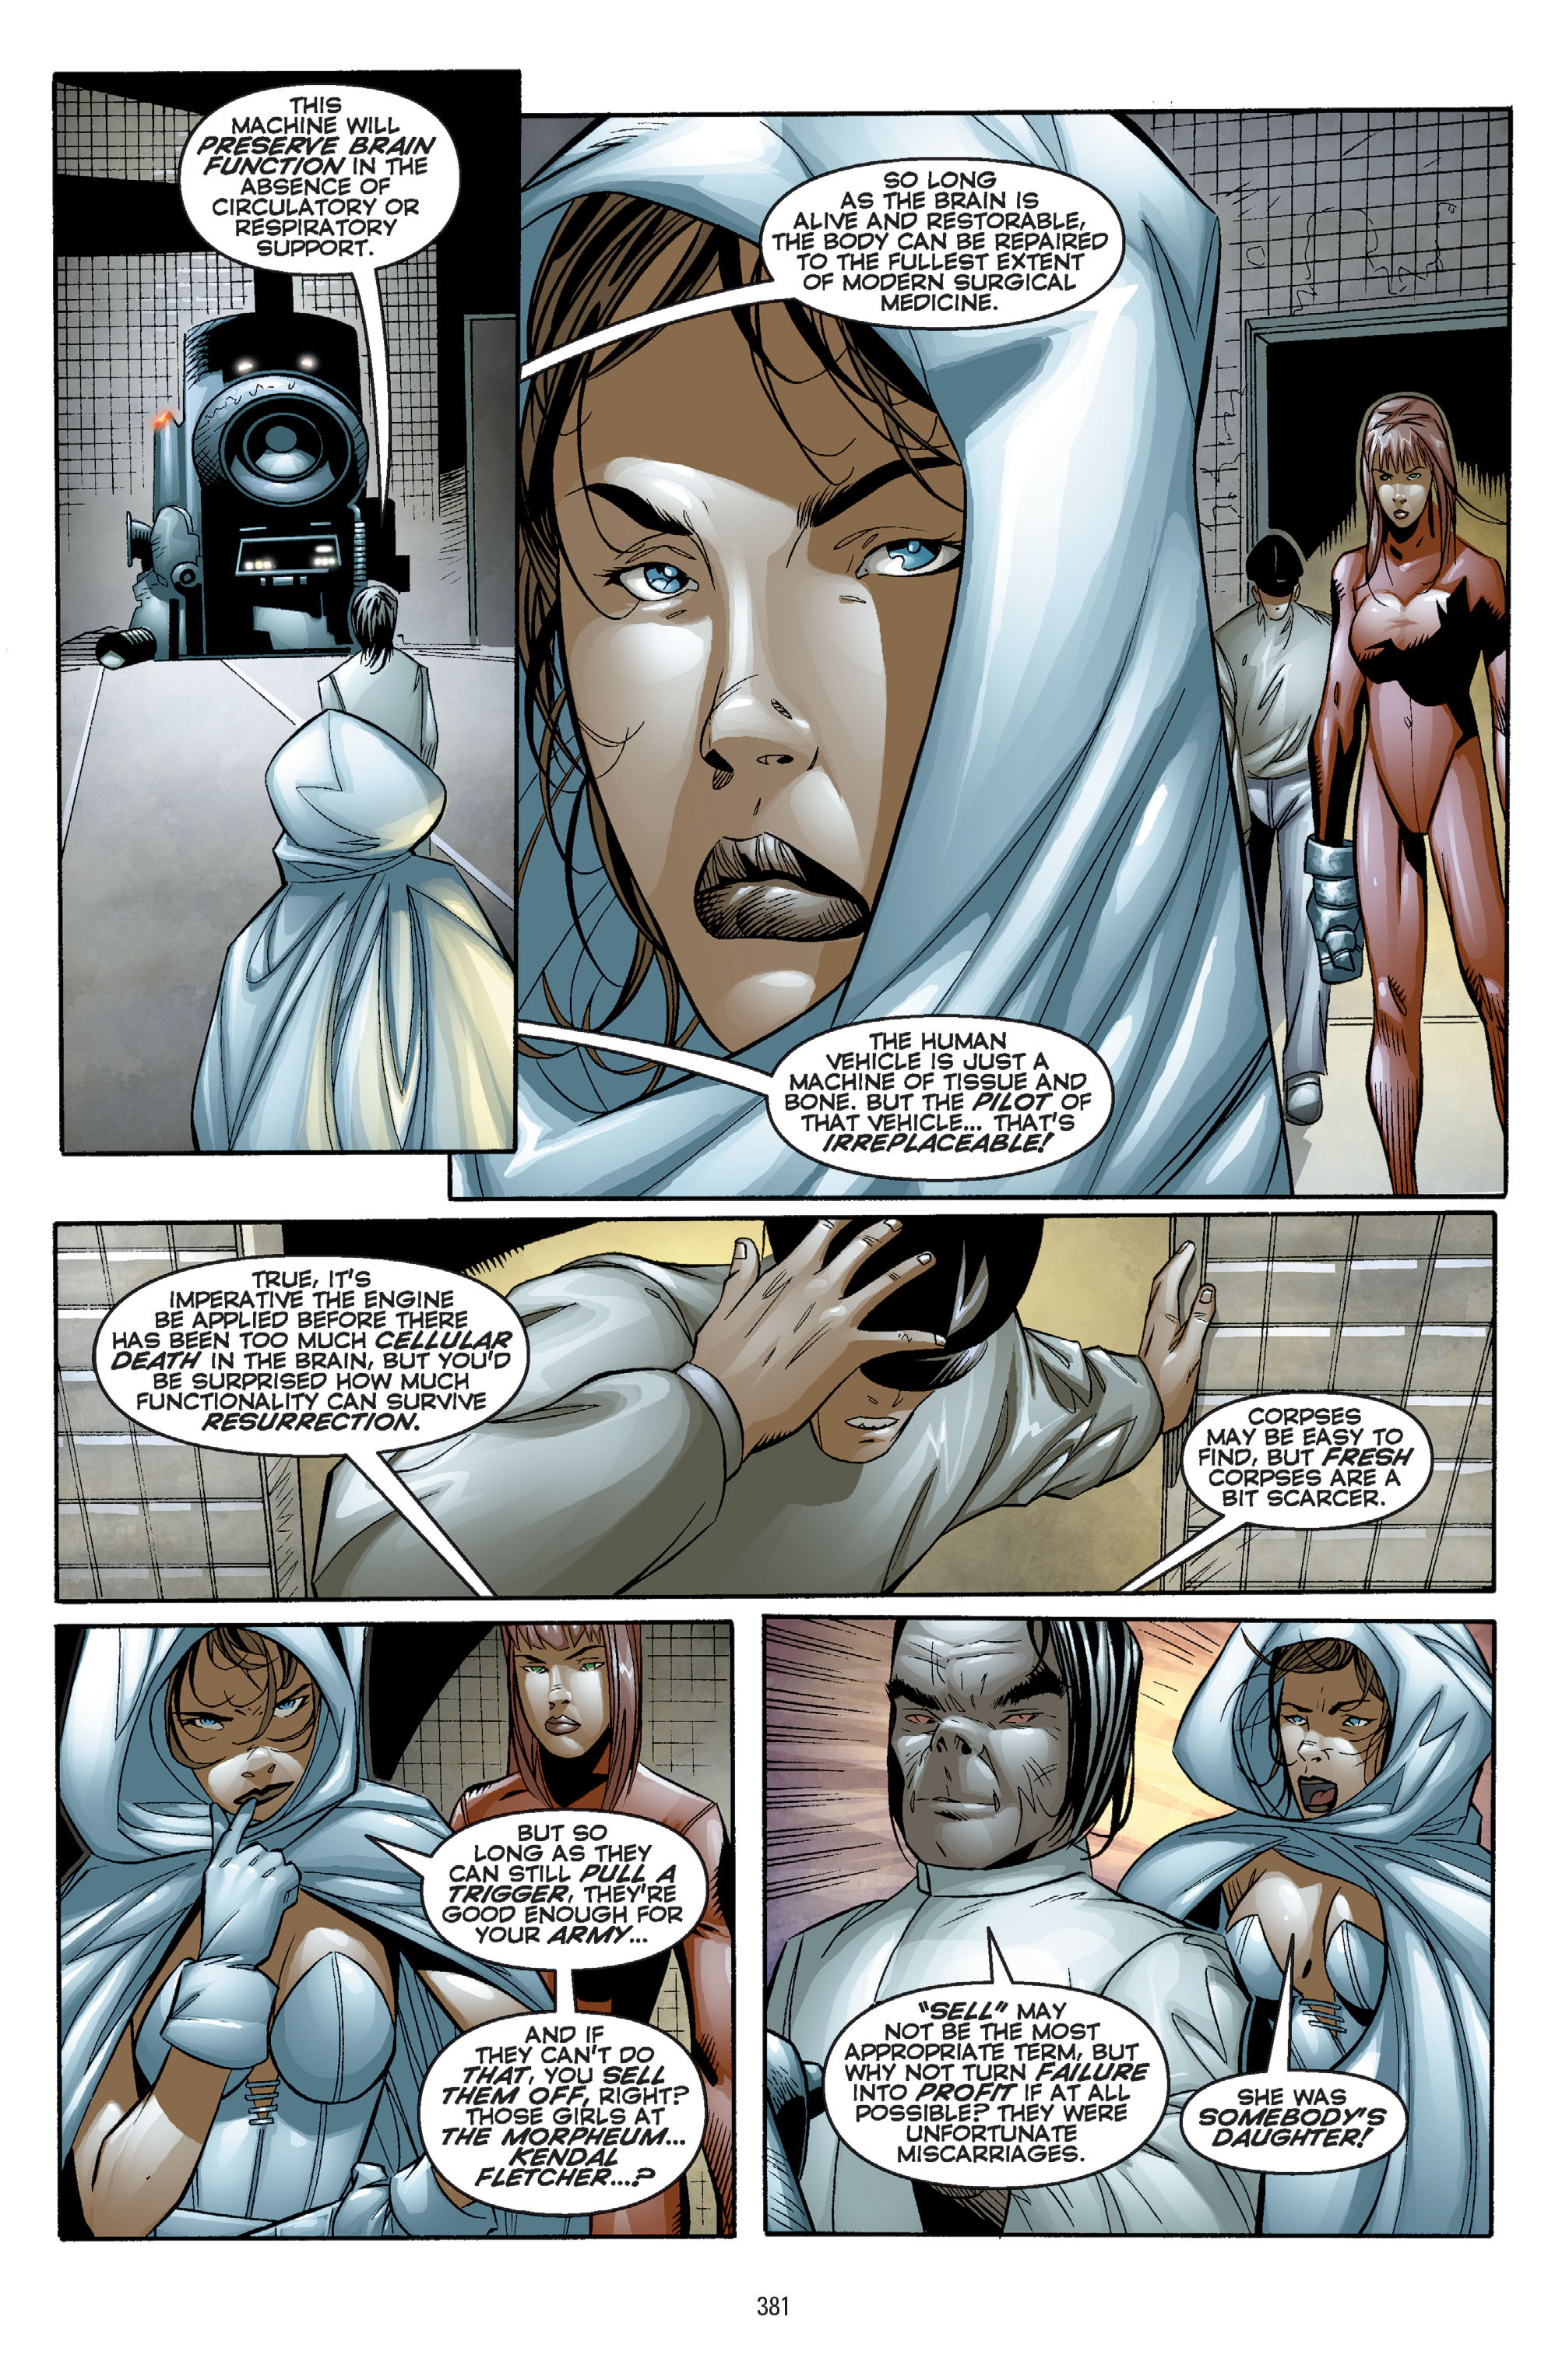 DC Comics/Dark Horse Comics: Justice League Full #1 - English 371